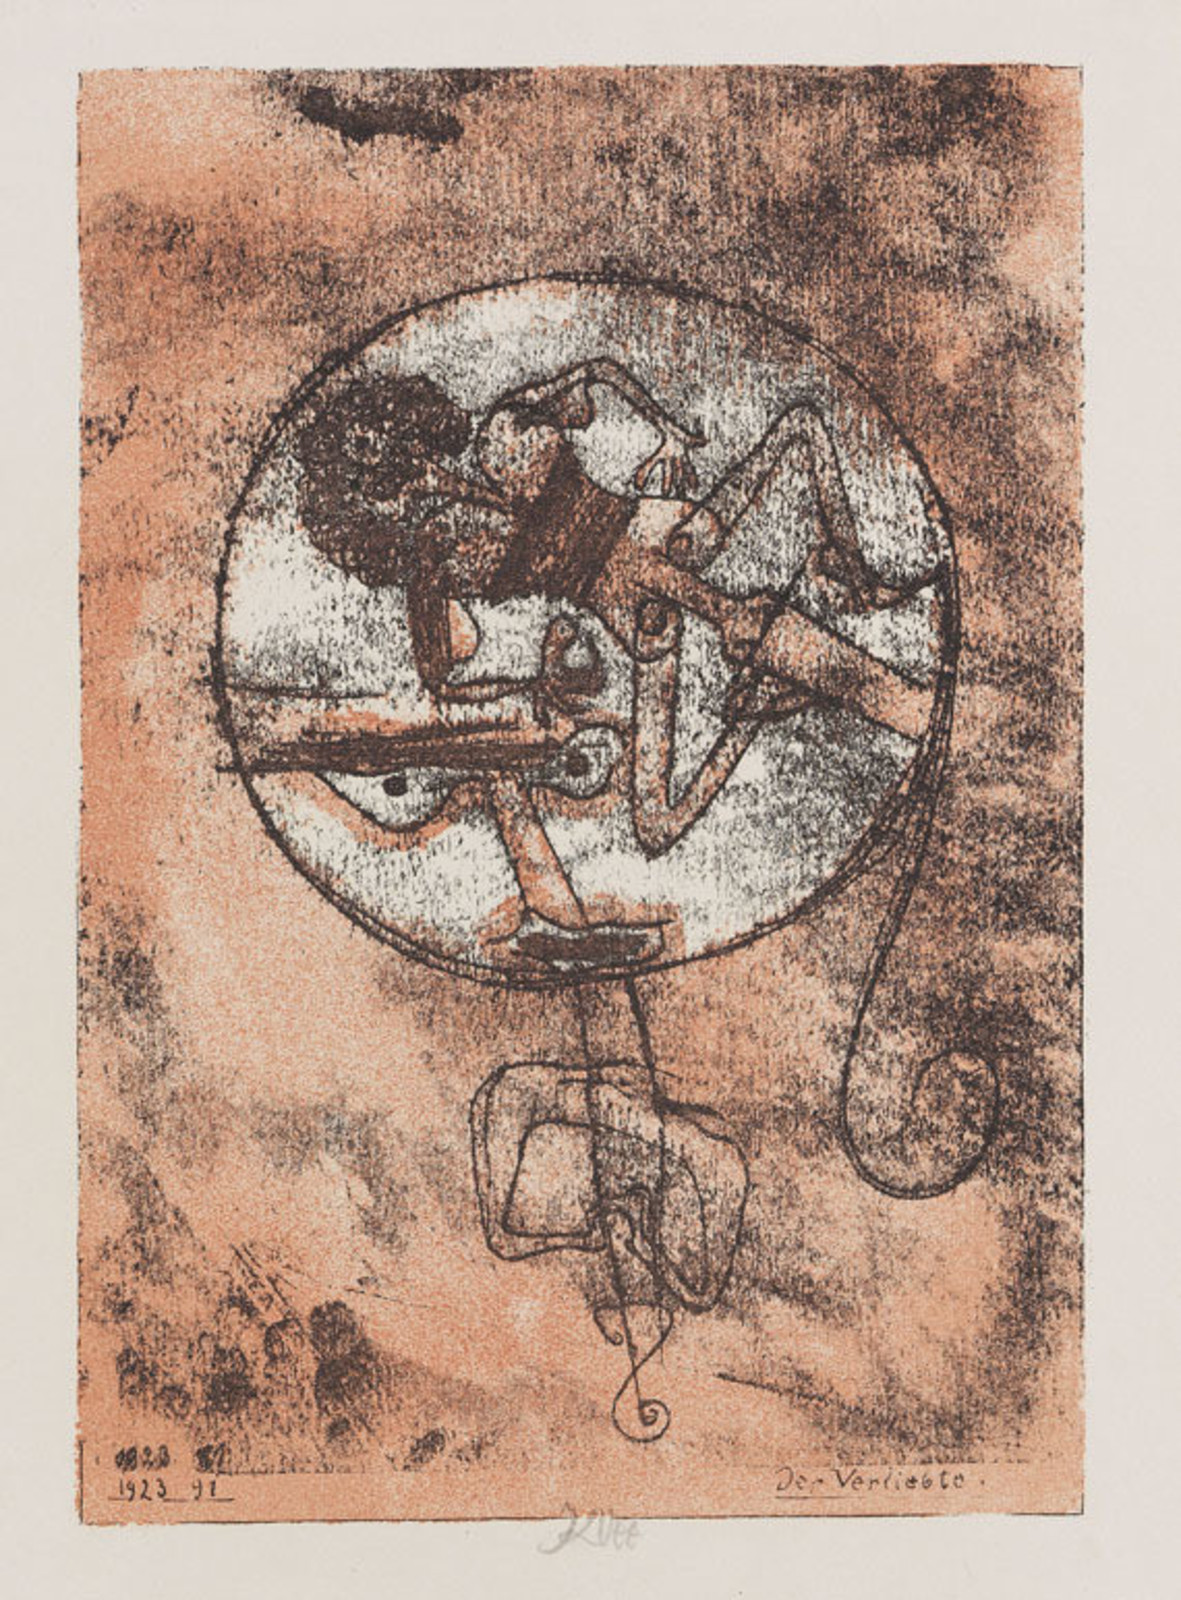 Пауль Клее. Влюбленный. 1923. Литография. 34,4x26,9. Музей современного искусства, Нью-Йорк